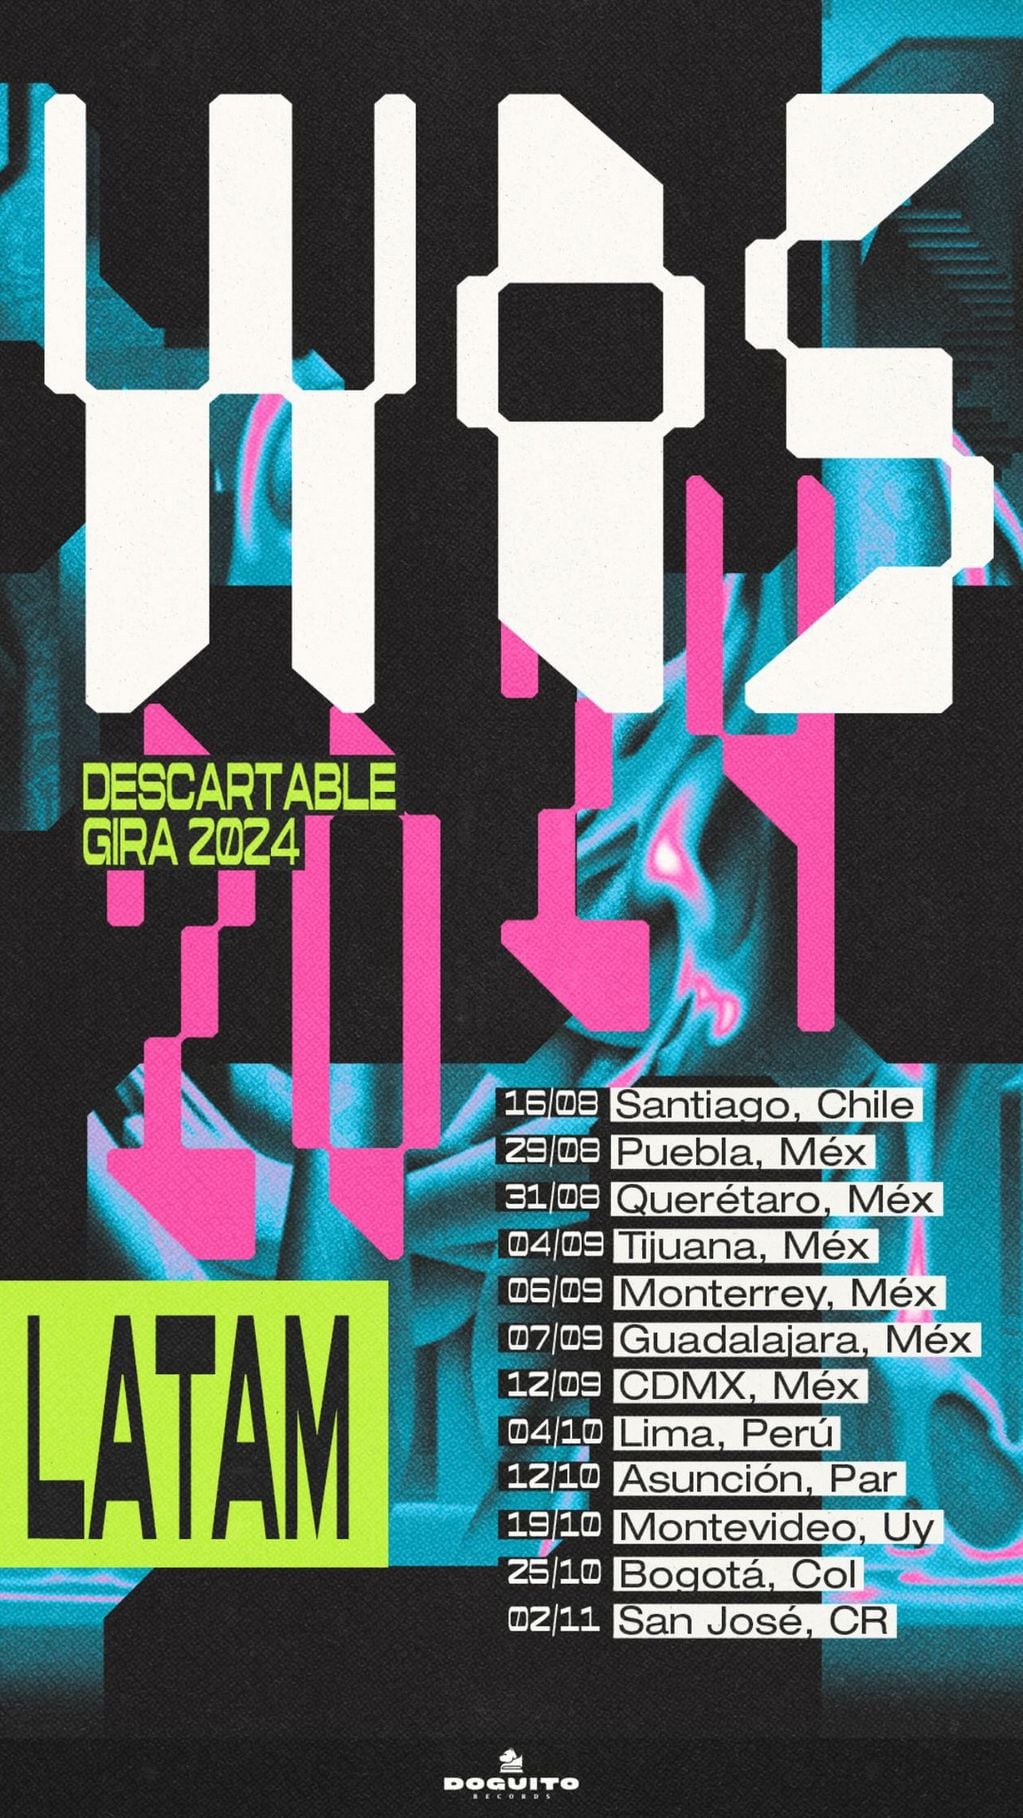 Wos anunció su gira mundial “Descartable”: ¿qué provincias argentinas visitará?